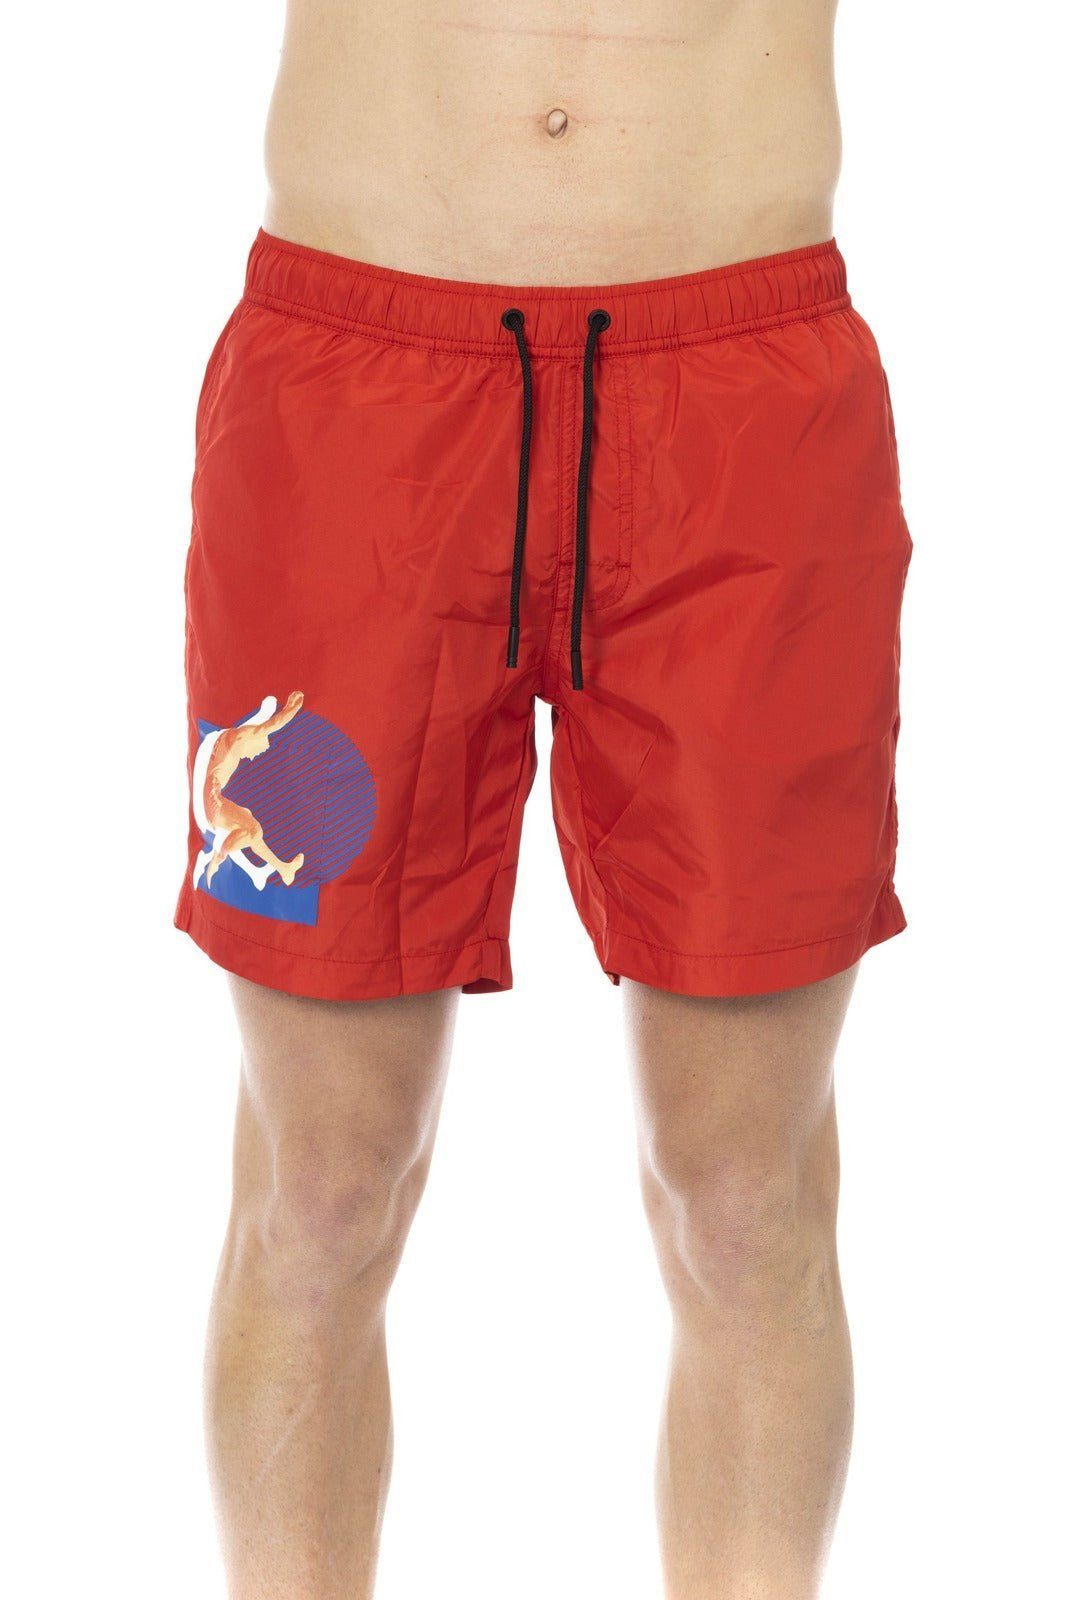 Bikkembergs Boxer-Badehose Bikkembergs Beachwear, Herren Boxershorts, Rot Must-Have für deinen Sommerurlaub